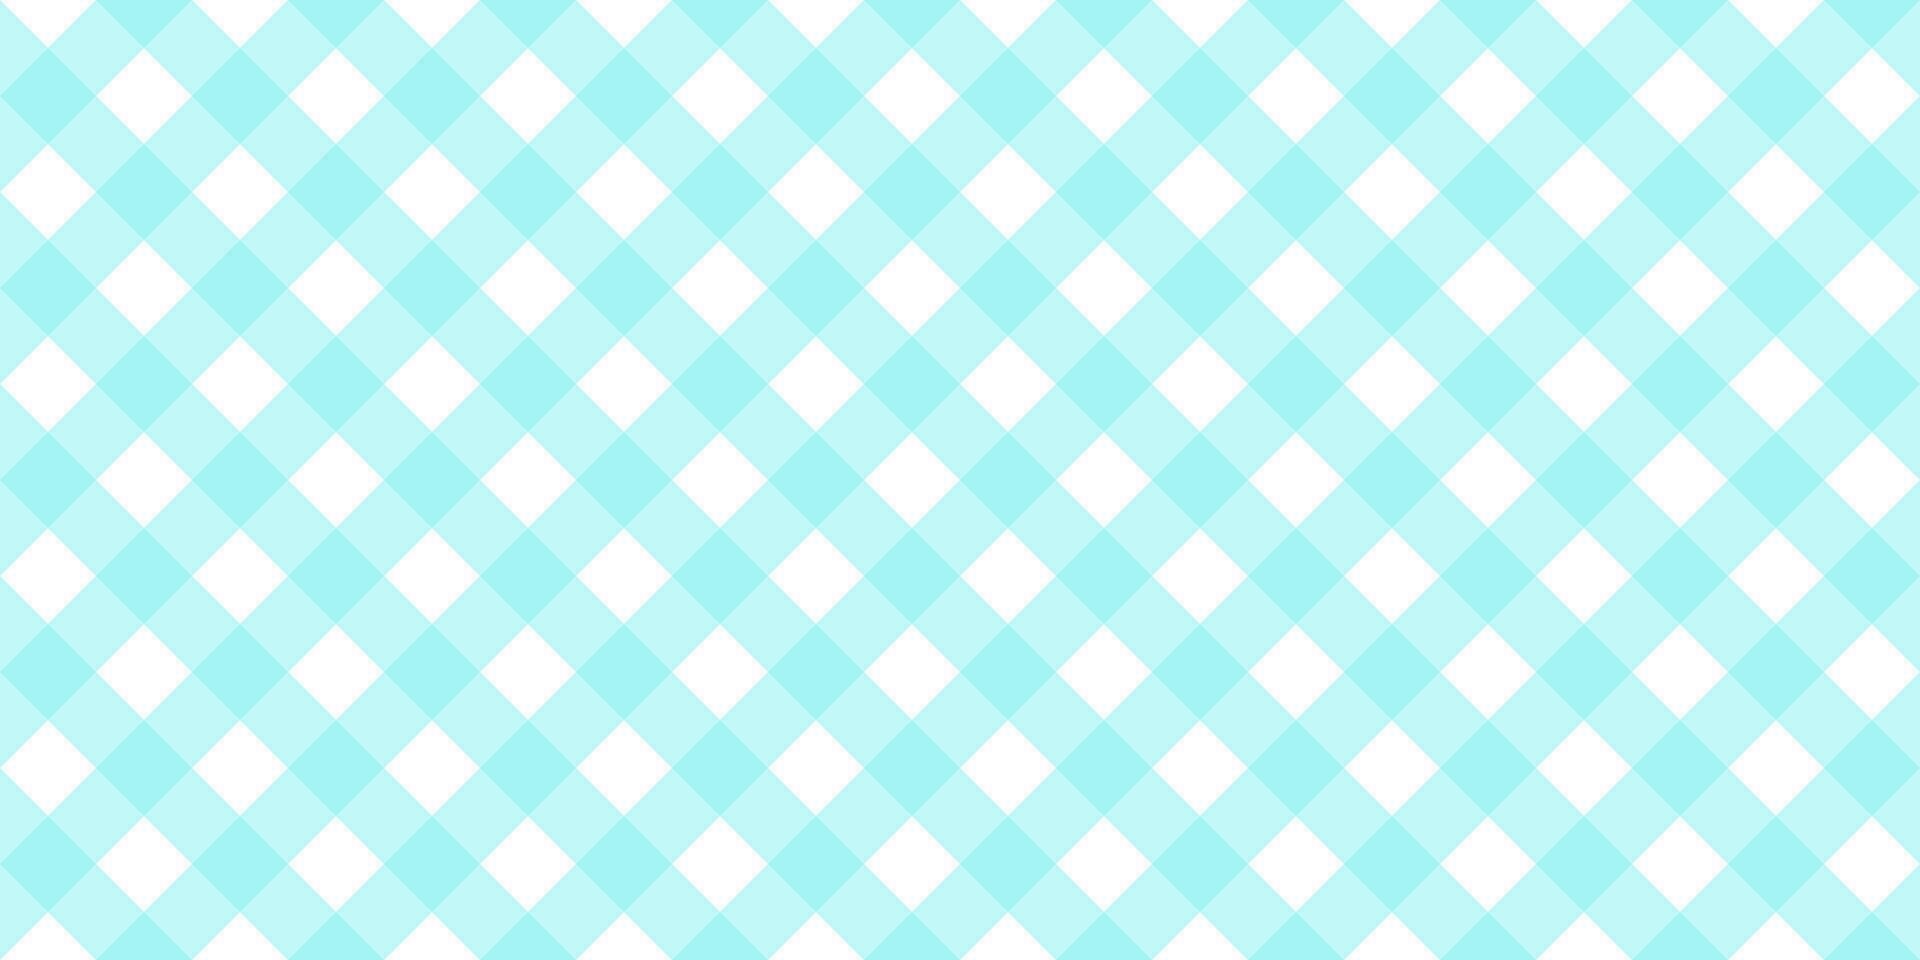 gingham diagonal sömlös mönster i blå pastell Färg. vichy pläd design för påsk Semester textil- dekorativ. vektor rutig mönster för tyg - picknick filt, bordsduk, klänning, servett.